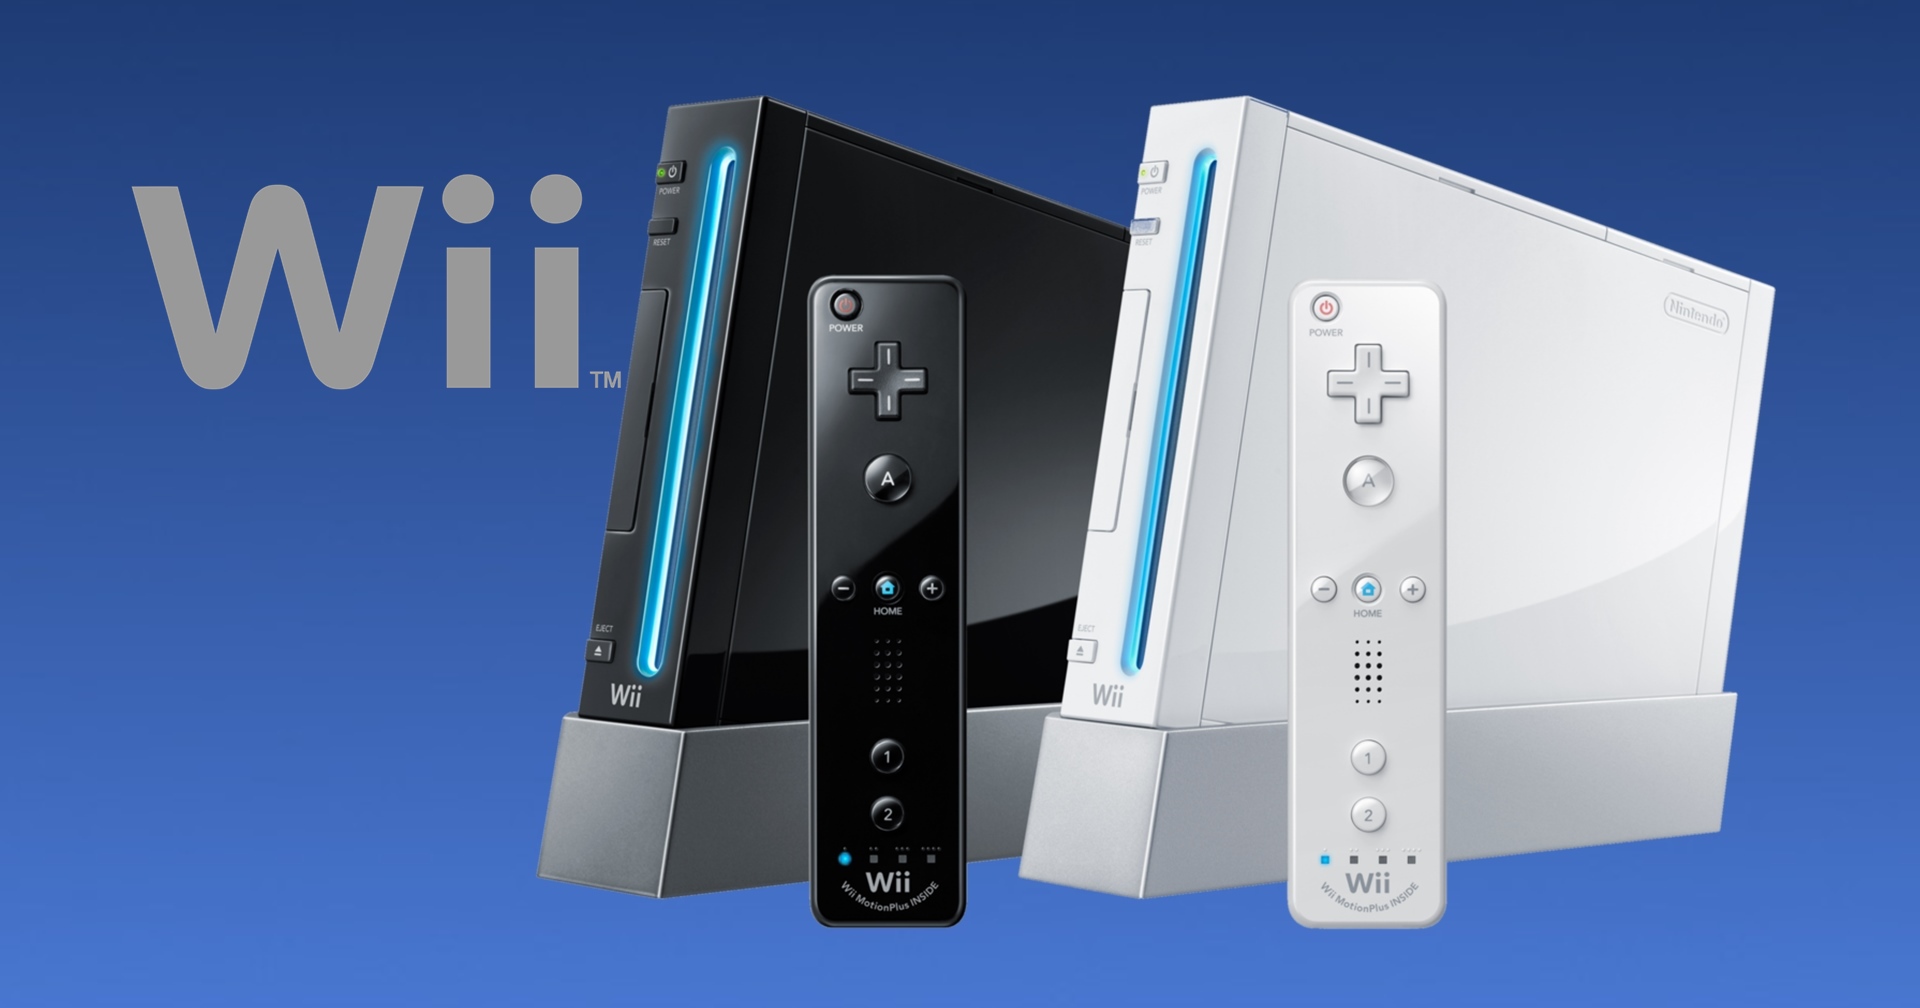 [บทความ] เปิดตำนาน Wii เครื่องเกมคืนชีพนินเทนโด